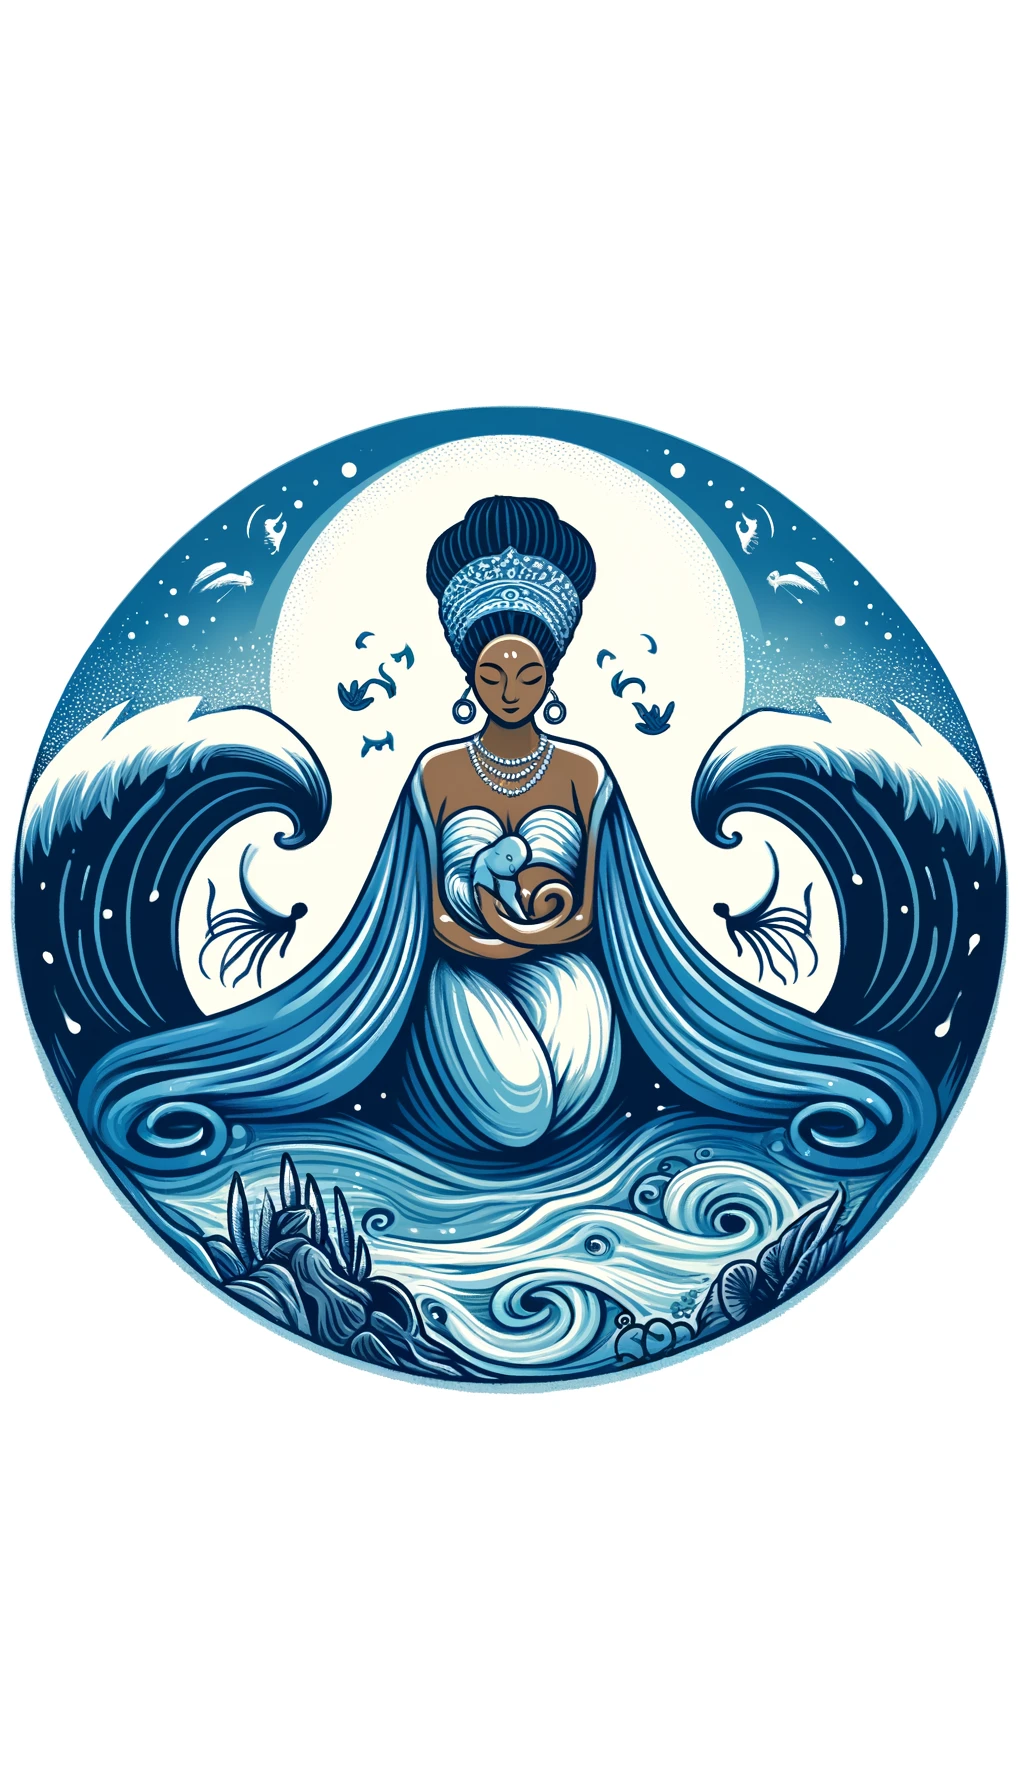 Ilustración de Yemayá, una deidad yoruba, con ropajes azules, de pie junto al mar, rodeada de olas y criaturas marinas, simbolizando su conexión con el océano y su naturaleza protectora.